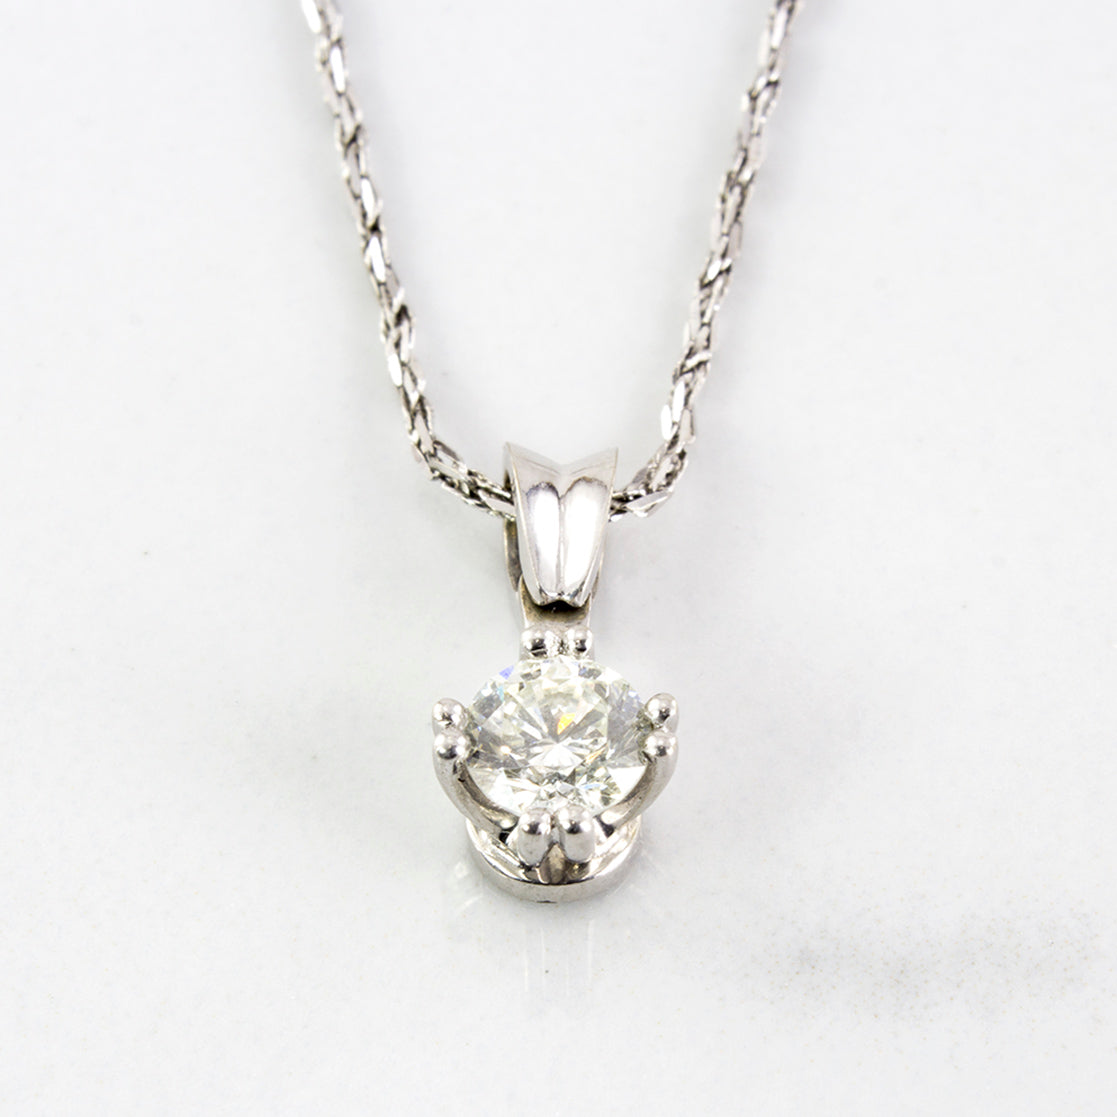 Double Prong Solitaire Diamond Necklace | 0.36 ctw | SZ 16